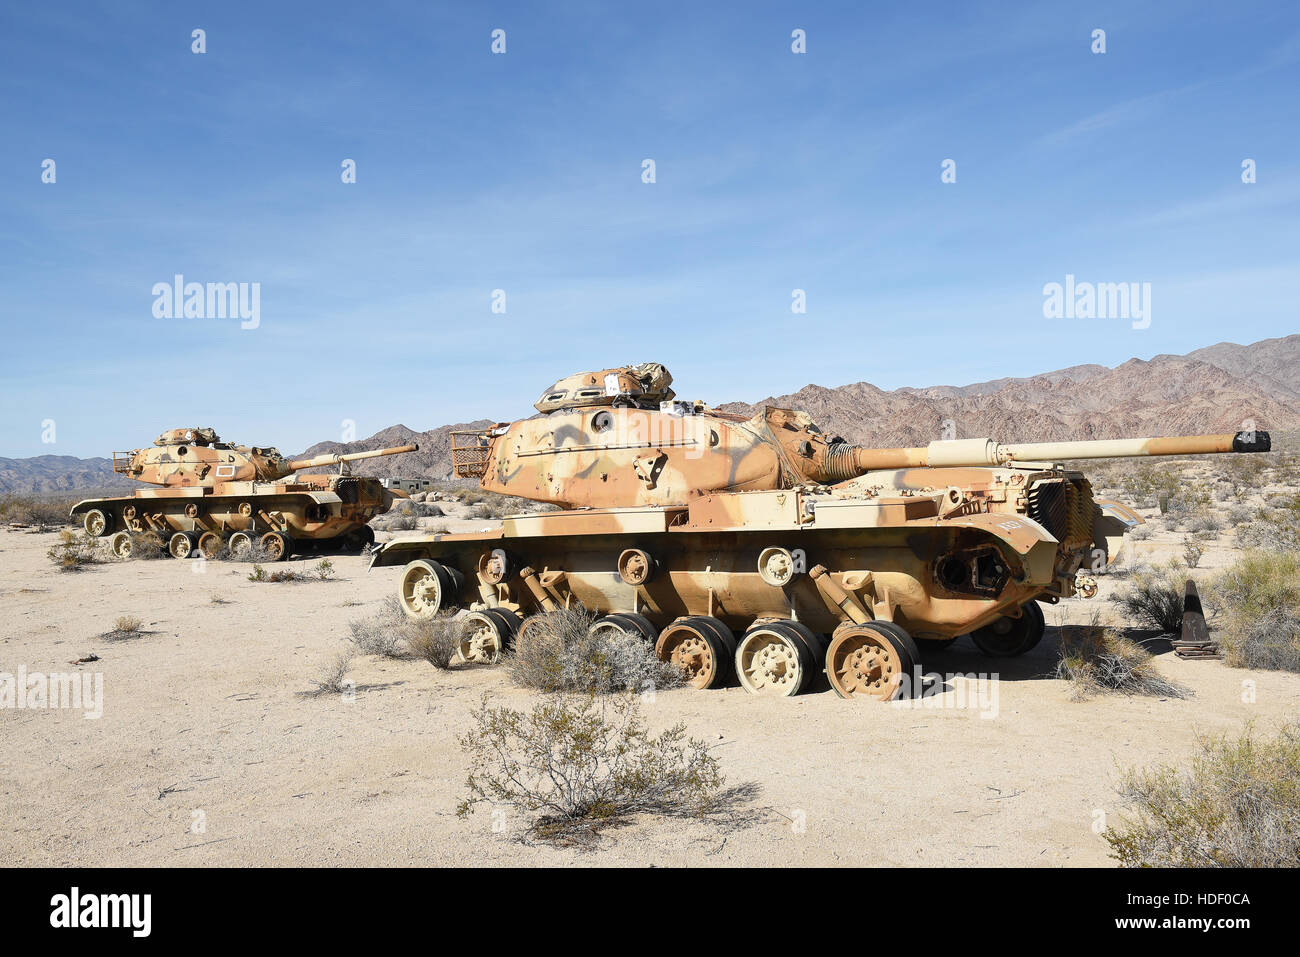 CHIRIACO Gipfel, CA - 10. Dezember 2016: Zwei M60 Panzer. Die verlassene Fahrzeuge sind am General Patton Memorial Museum in der kalifornischen Wüste. Stockfoto